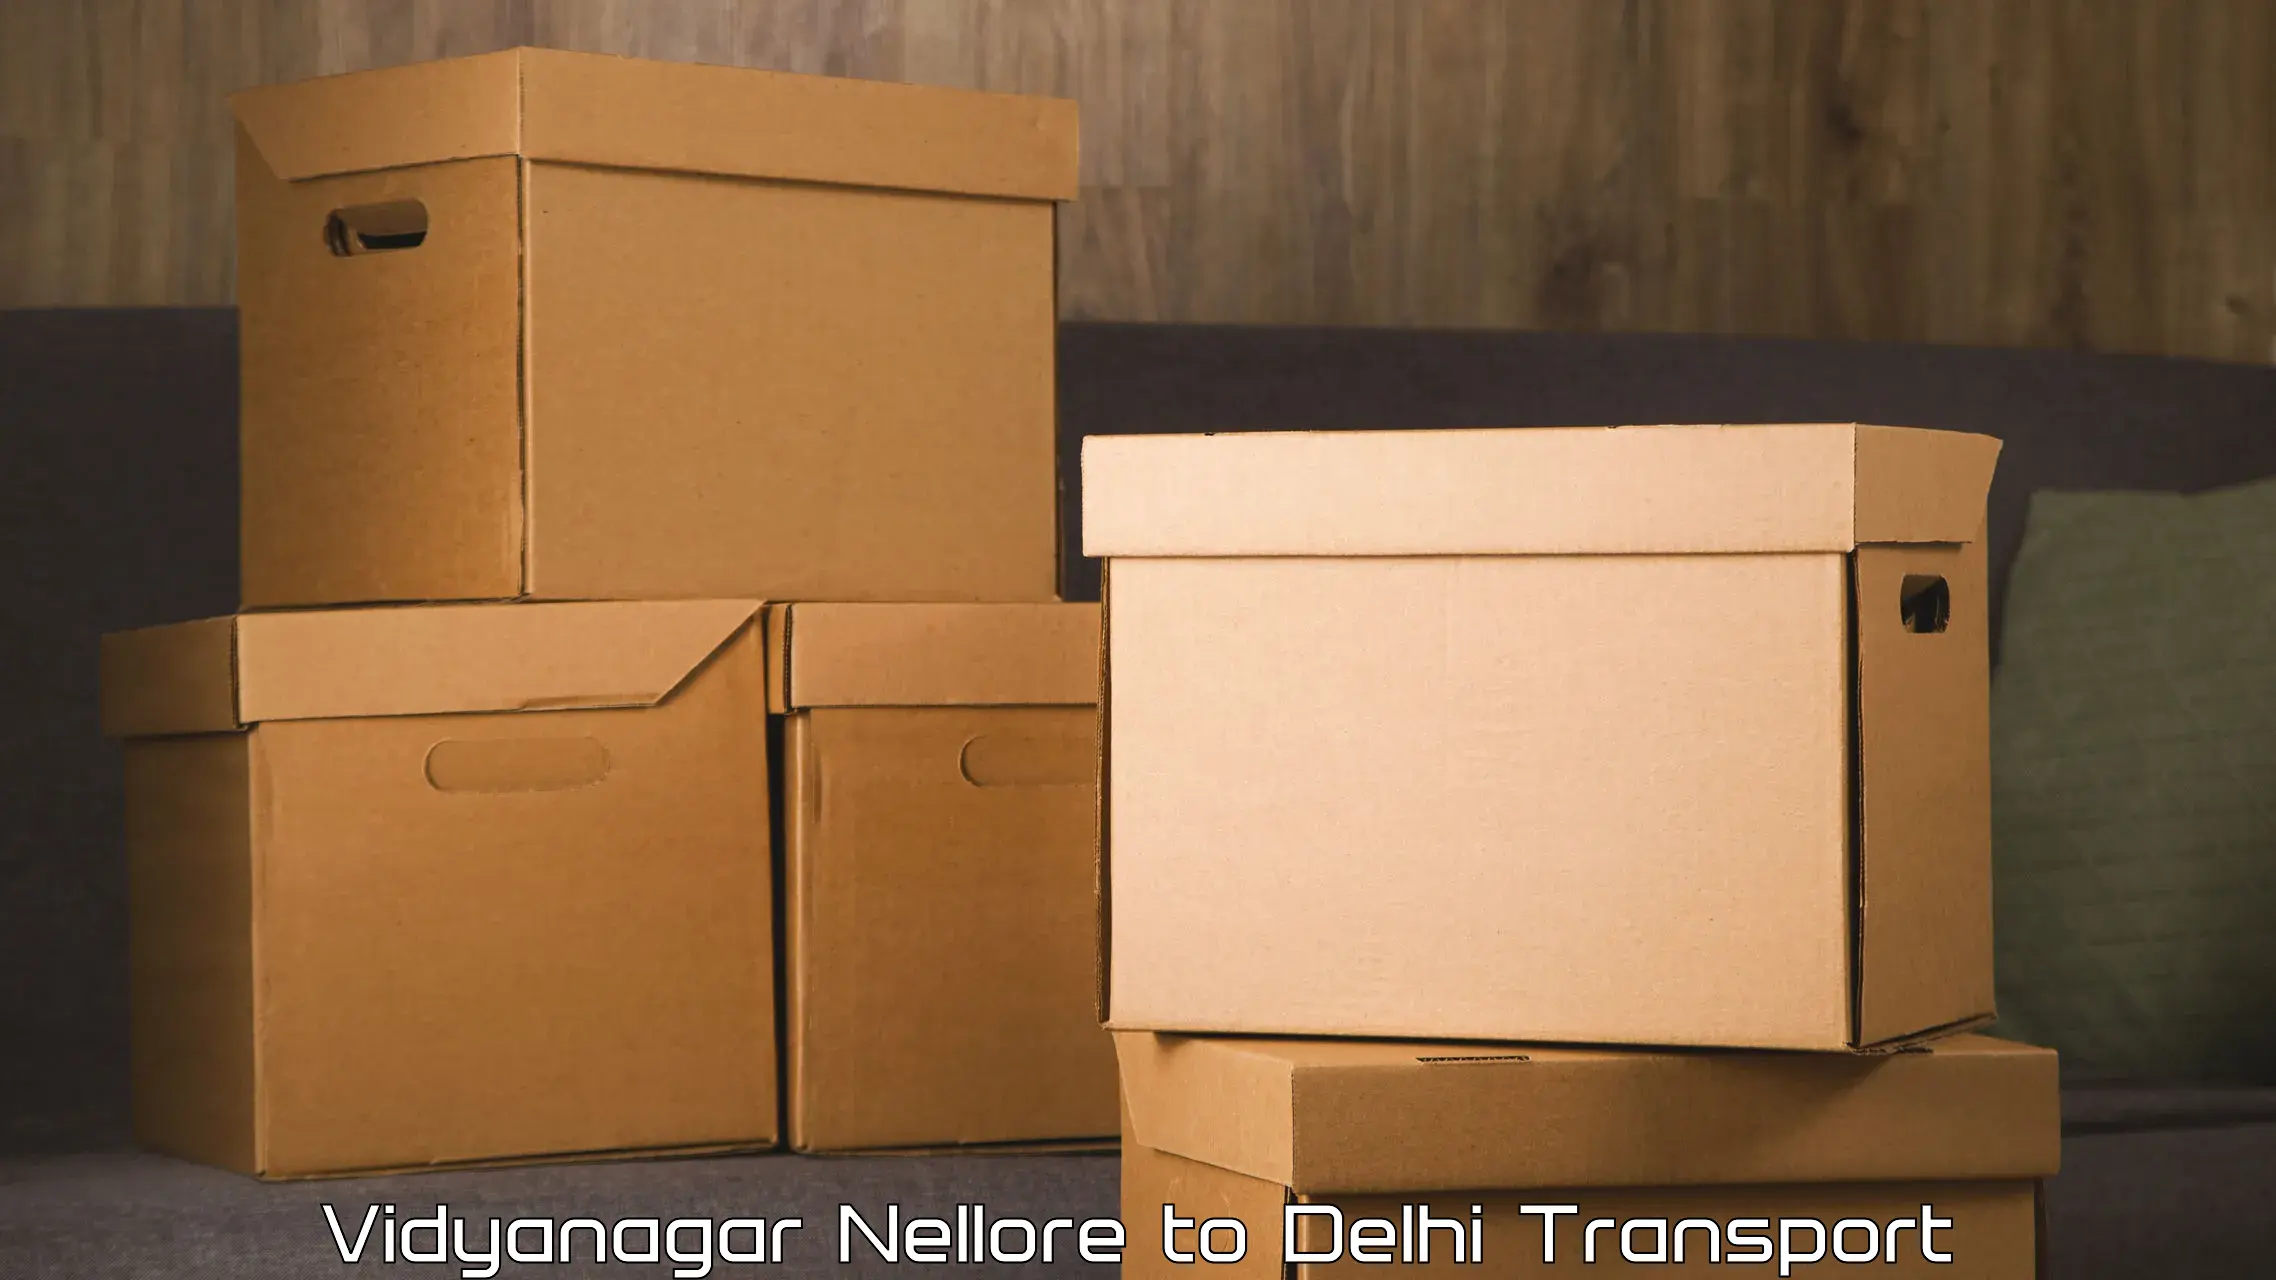 Air freight transport services Vidyanagar Nellore to NIT Delhi